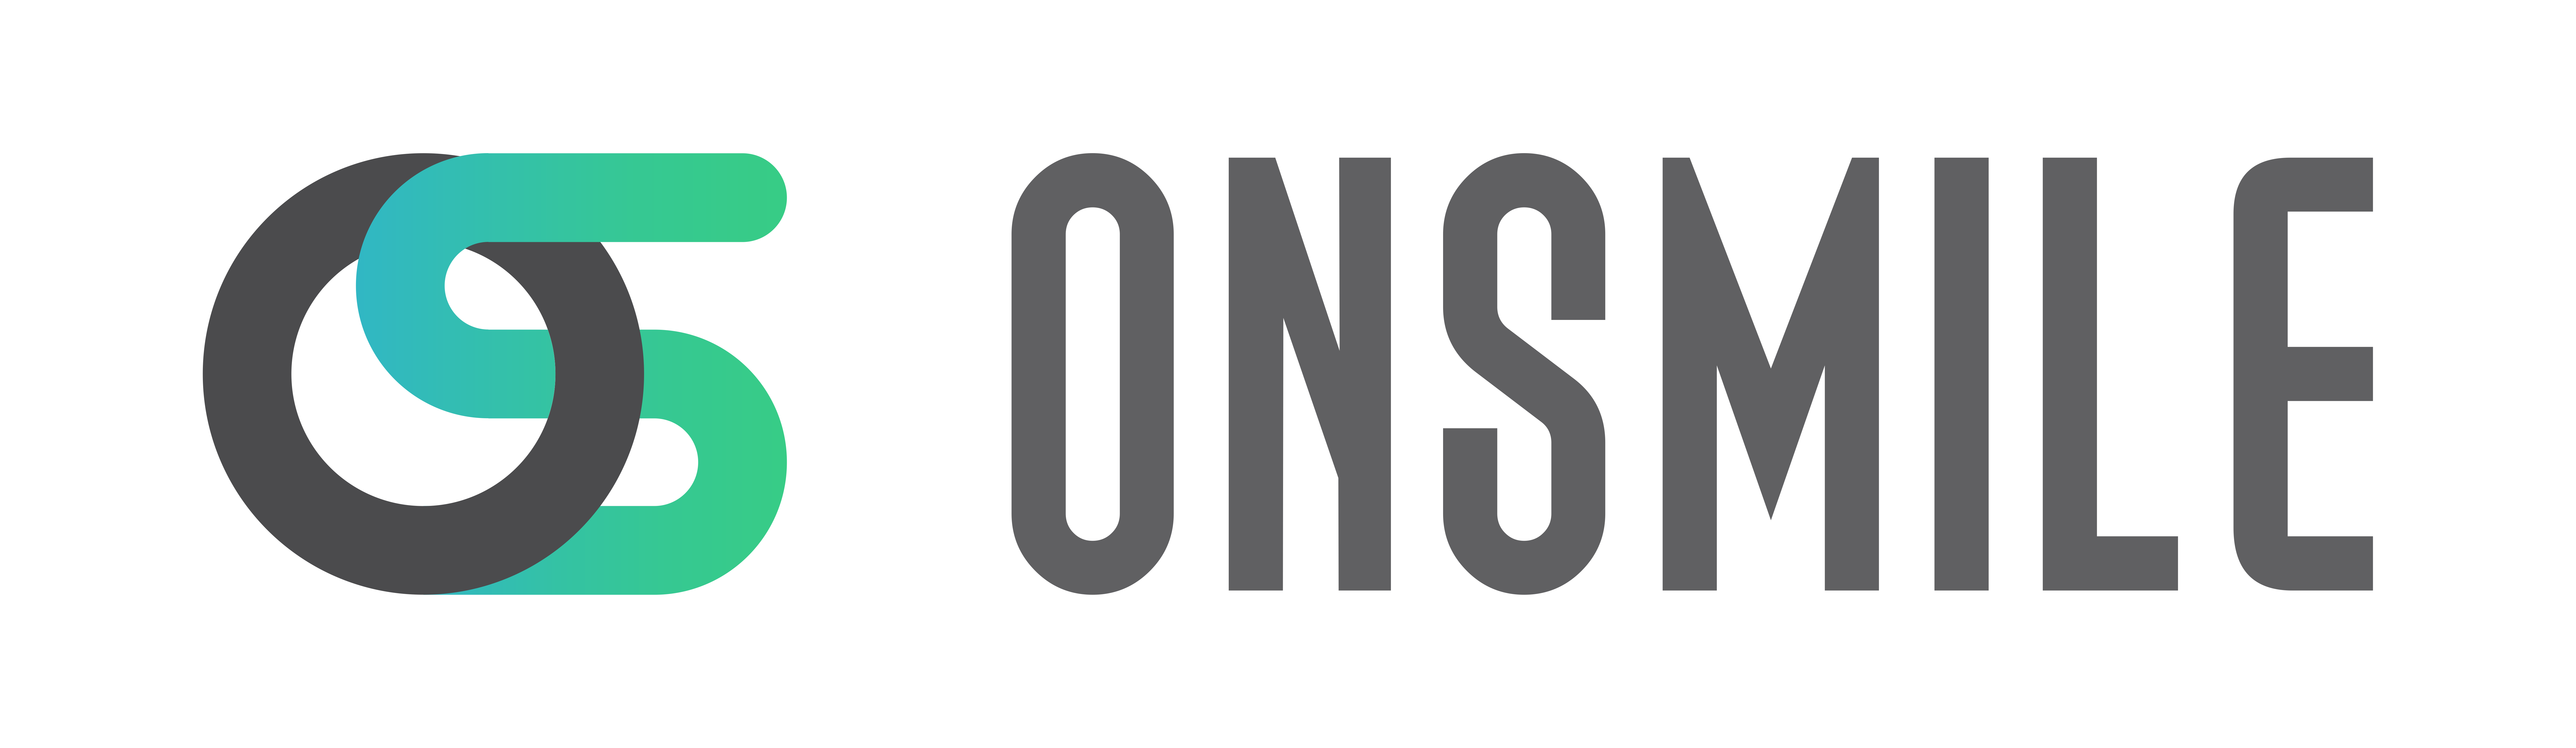 OnSmile –  Hệ thống phân phối sản phẩm nha khoa hàng đầu